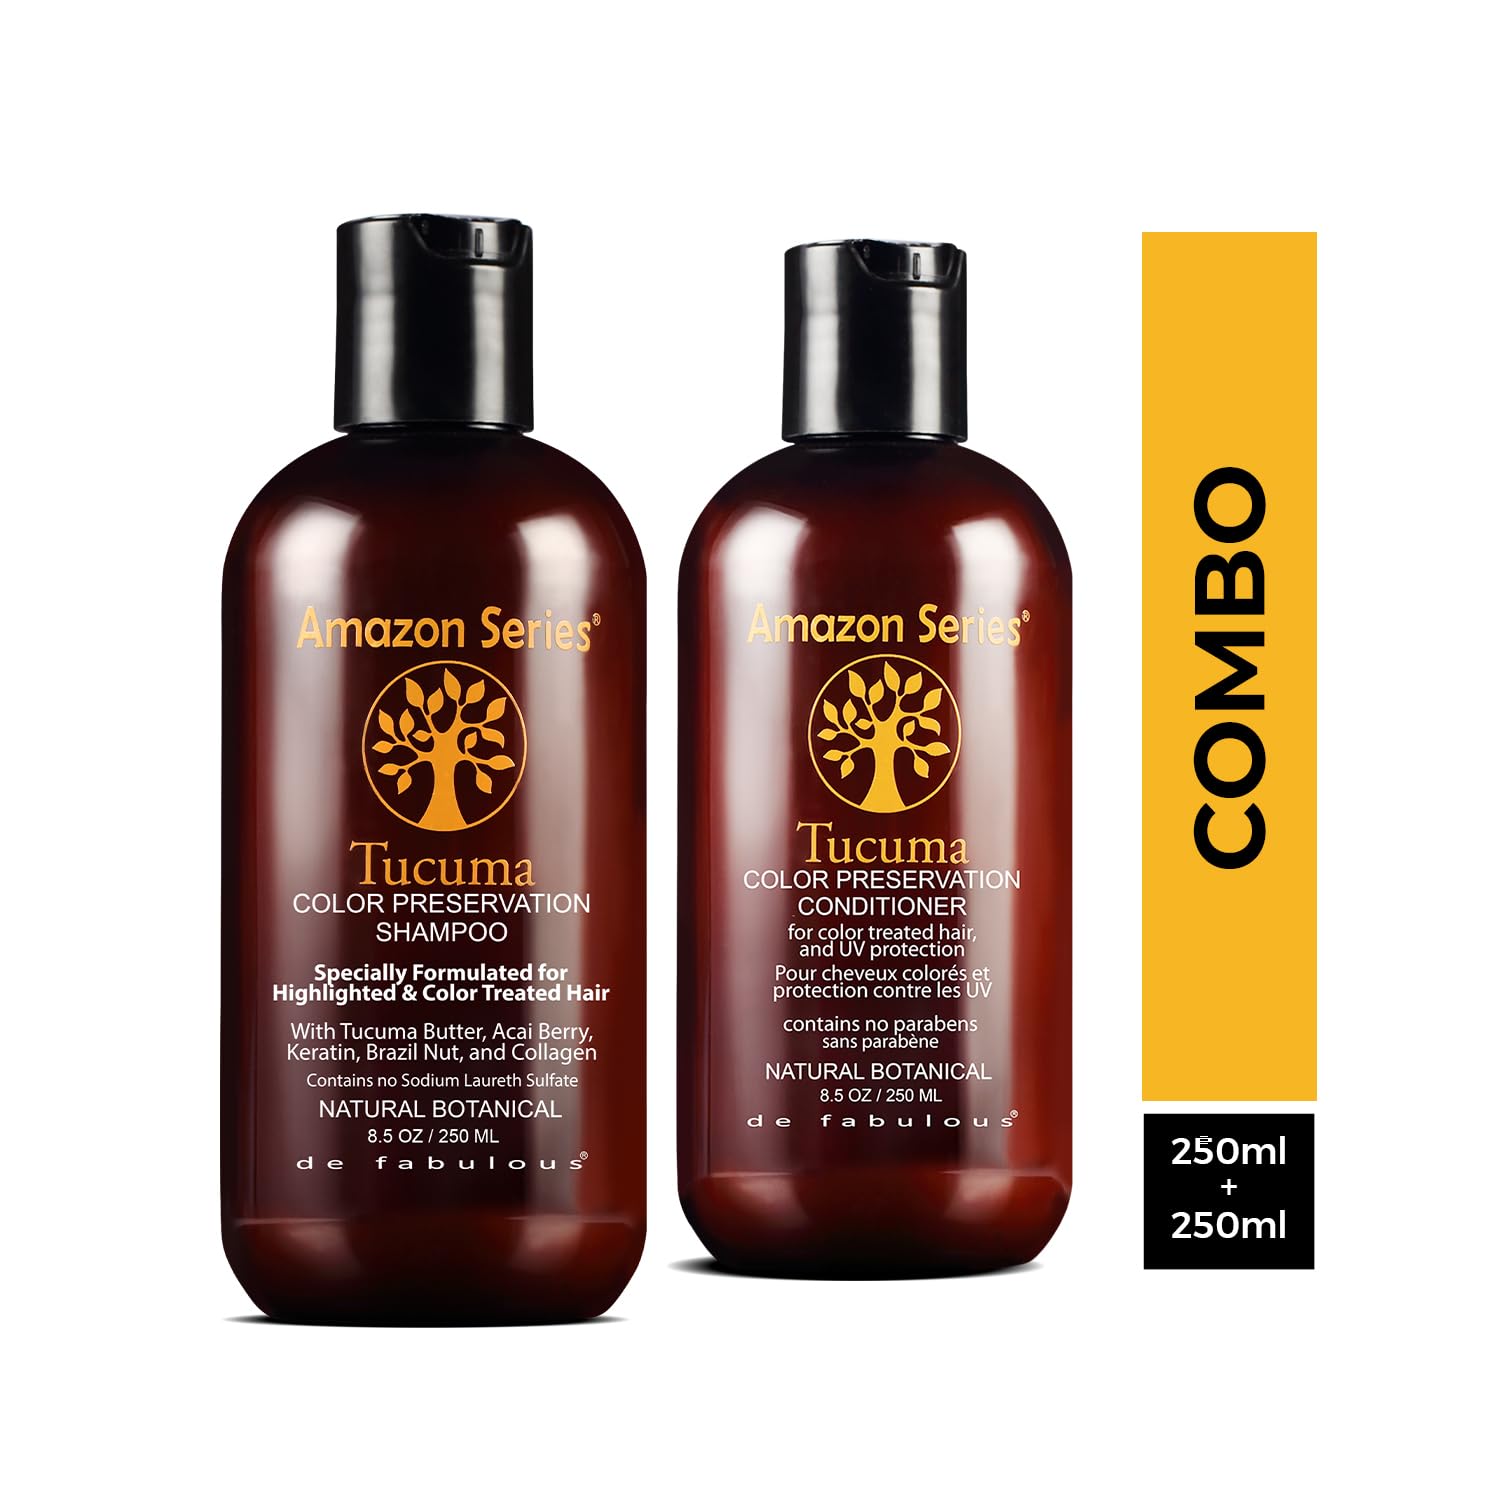 Amazon Series Tucuma Color Preservation Shampoo & Conditioner-250ml Combo